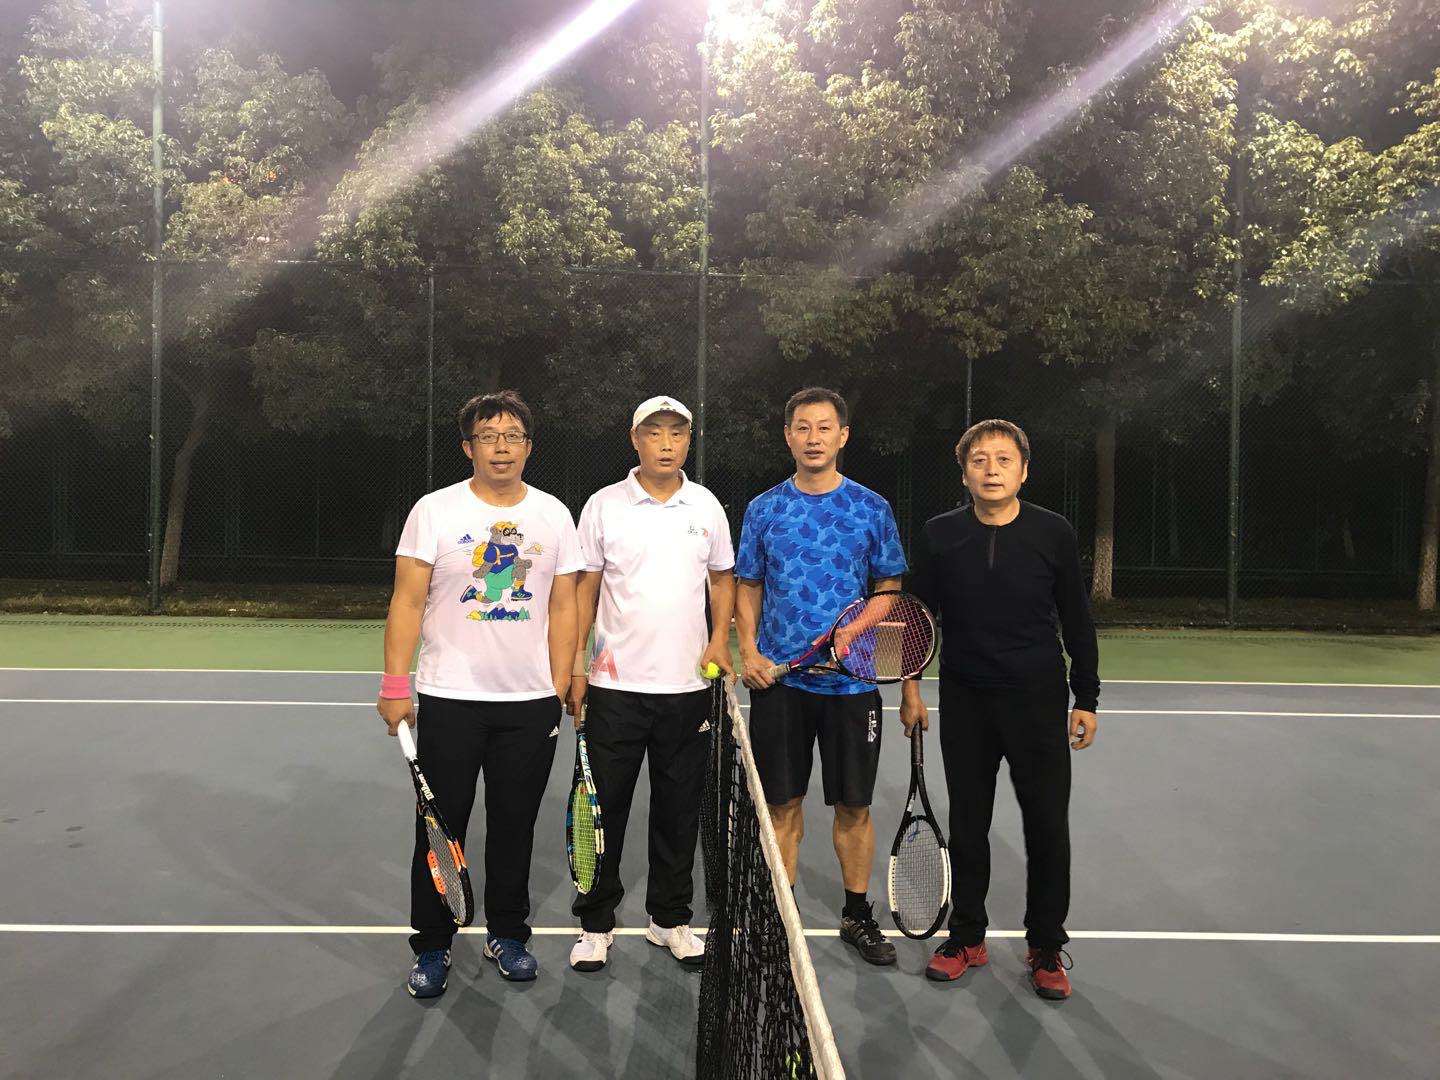 lpl夏季赛冒泡赛赛程_里约网球赛程_武汉网球公开赛 赛程